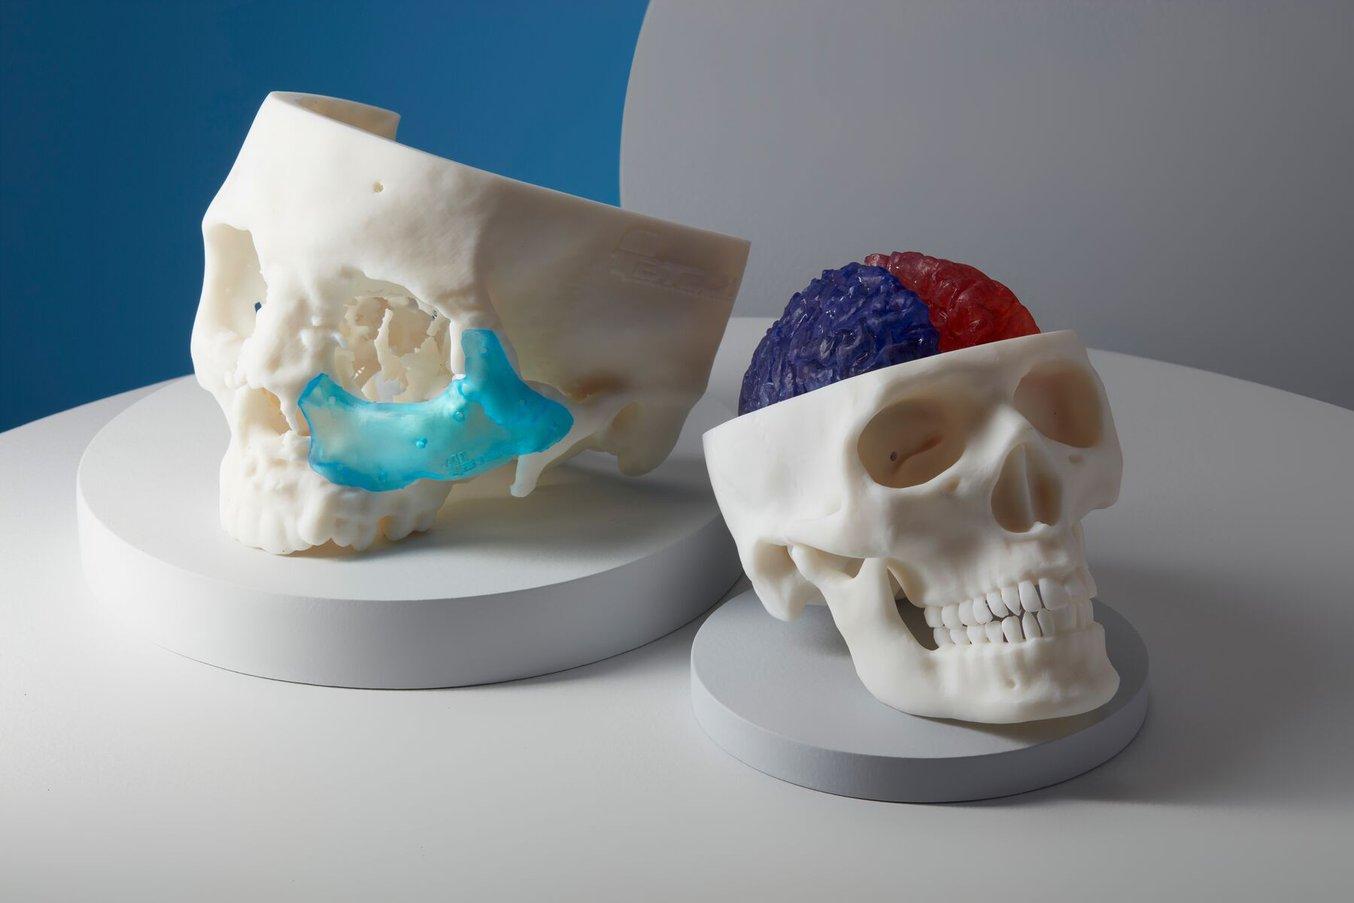 3D printed samples